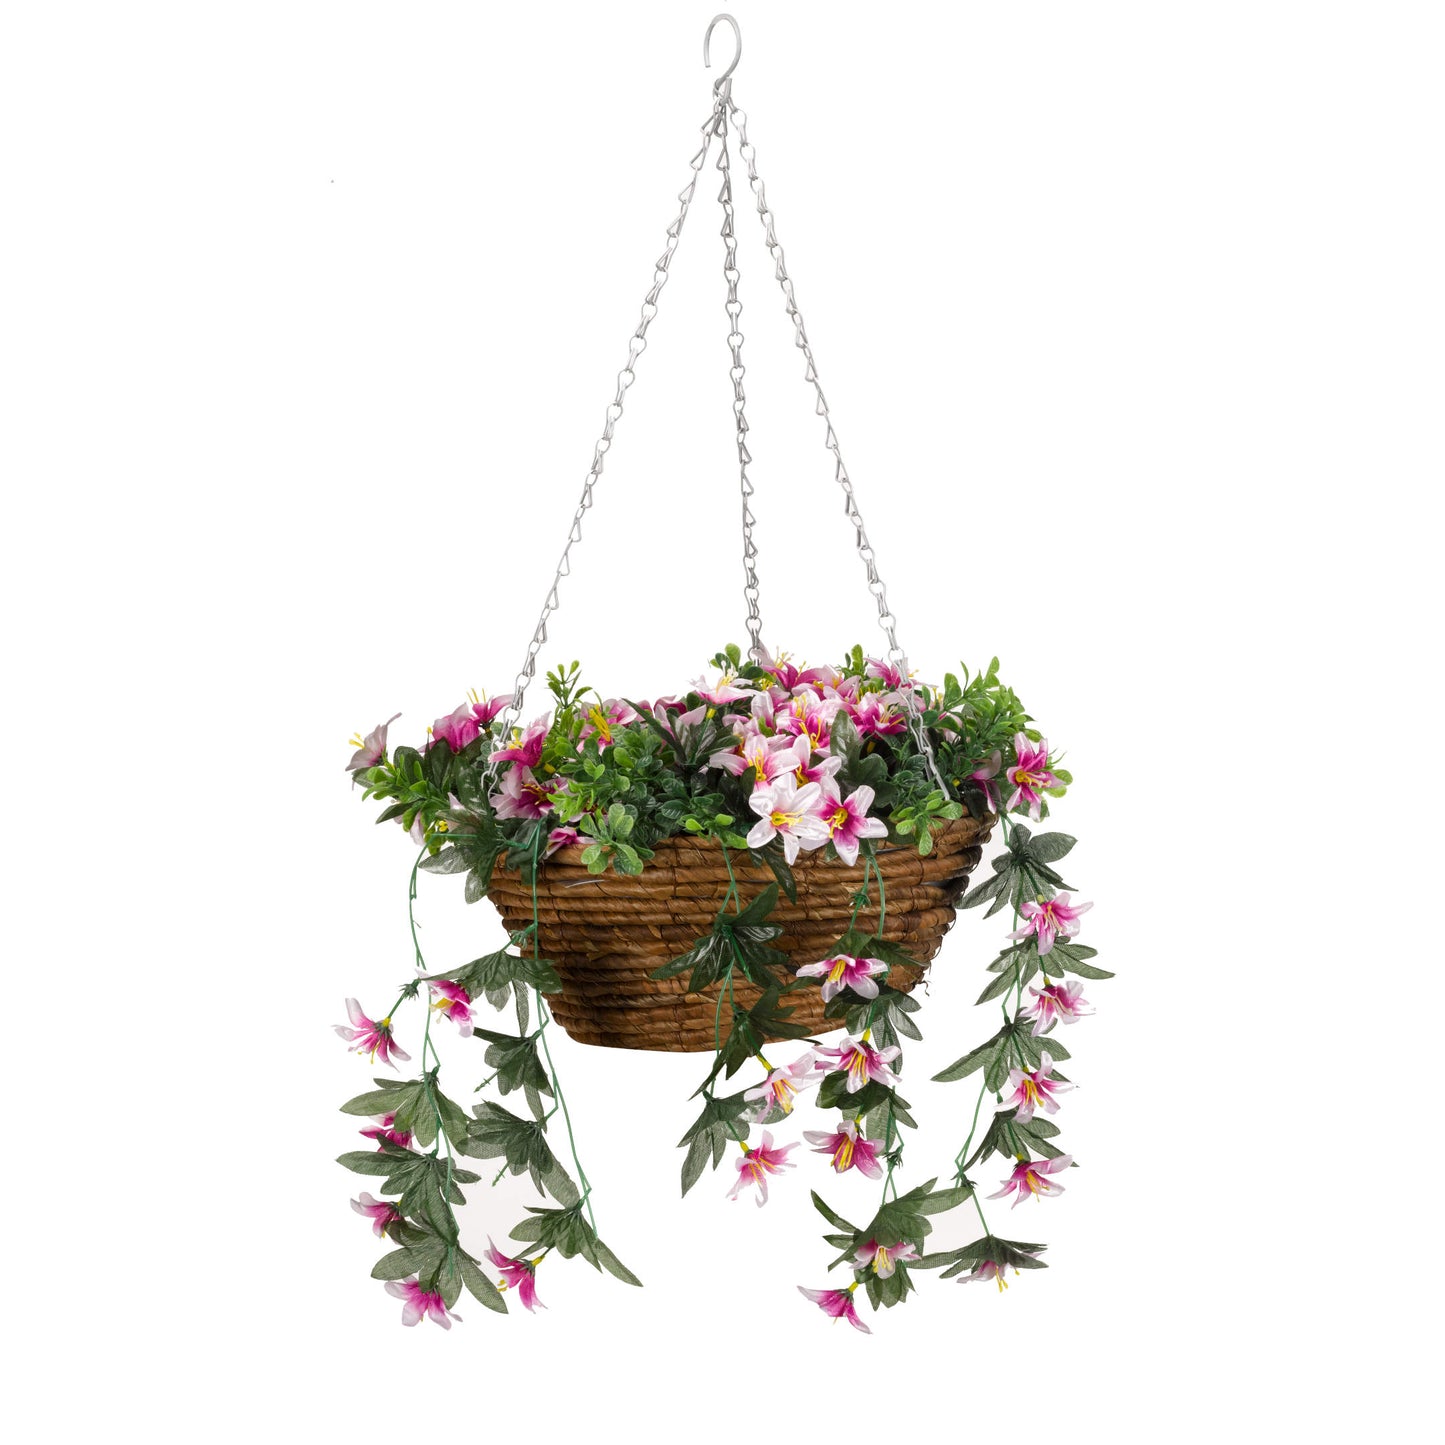 Star Gazing Lilies ⸱ košík s umelými kvetmi na zavesenie